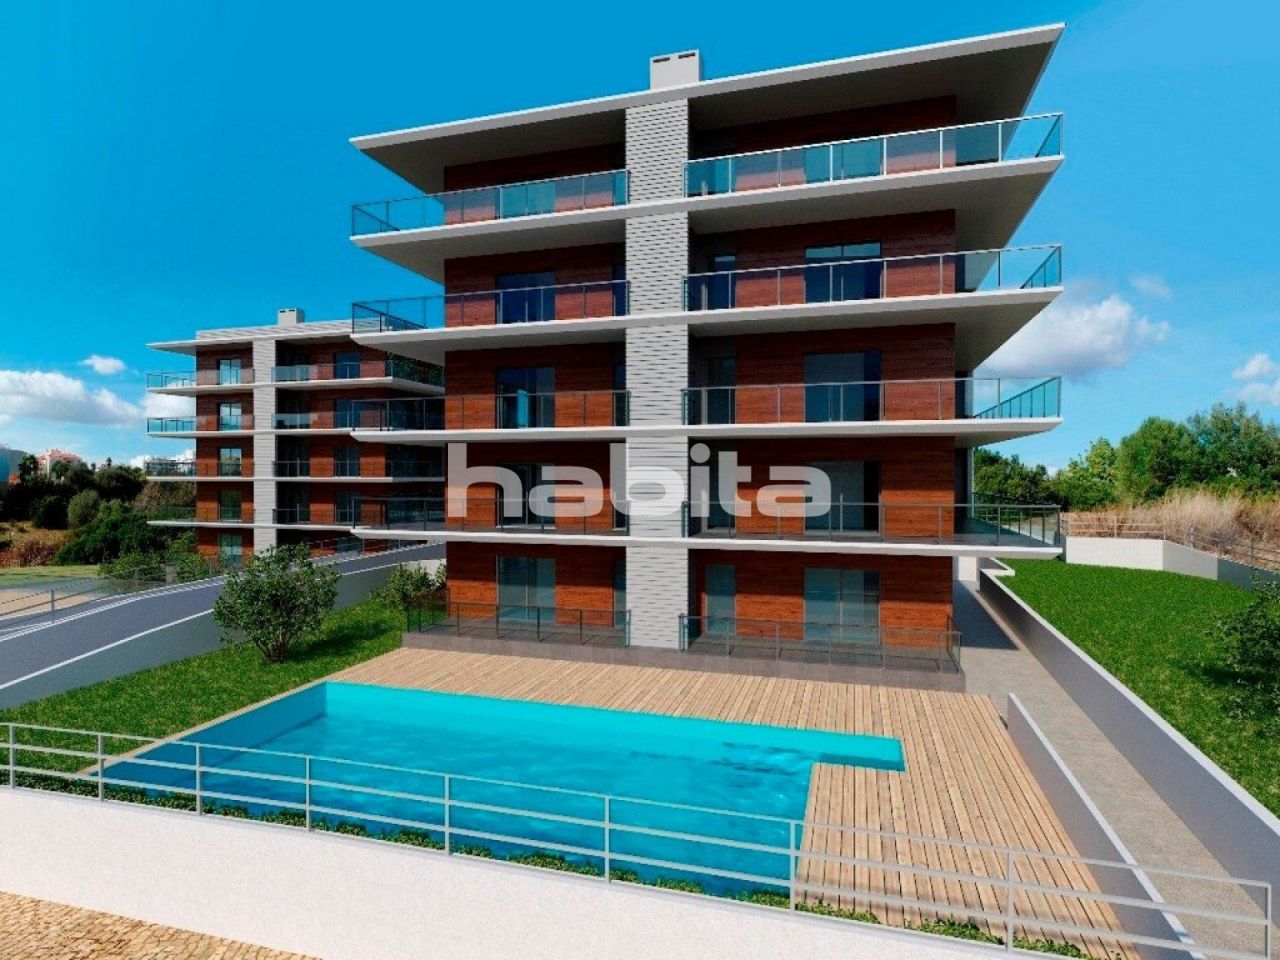 Apartment in Portimao, Portugal, 50.85 sq.m - picture 1